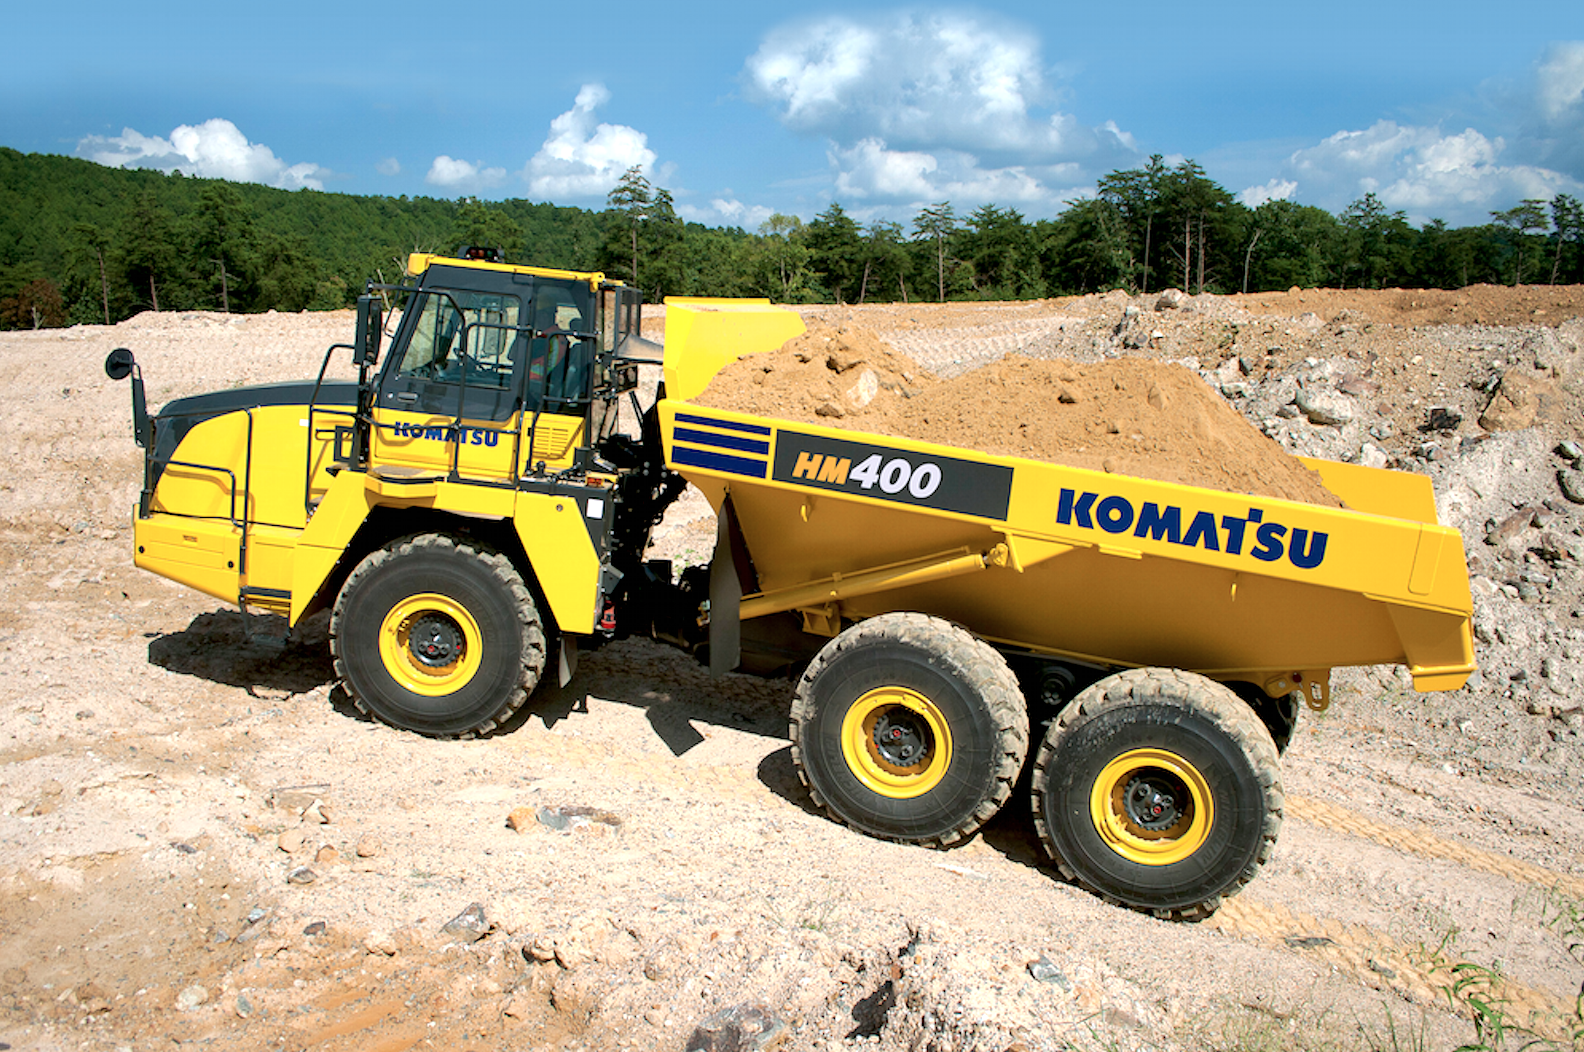 HM400 Dump Truck Hire | Komatsu Articulated Dump Truck from Ridgway